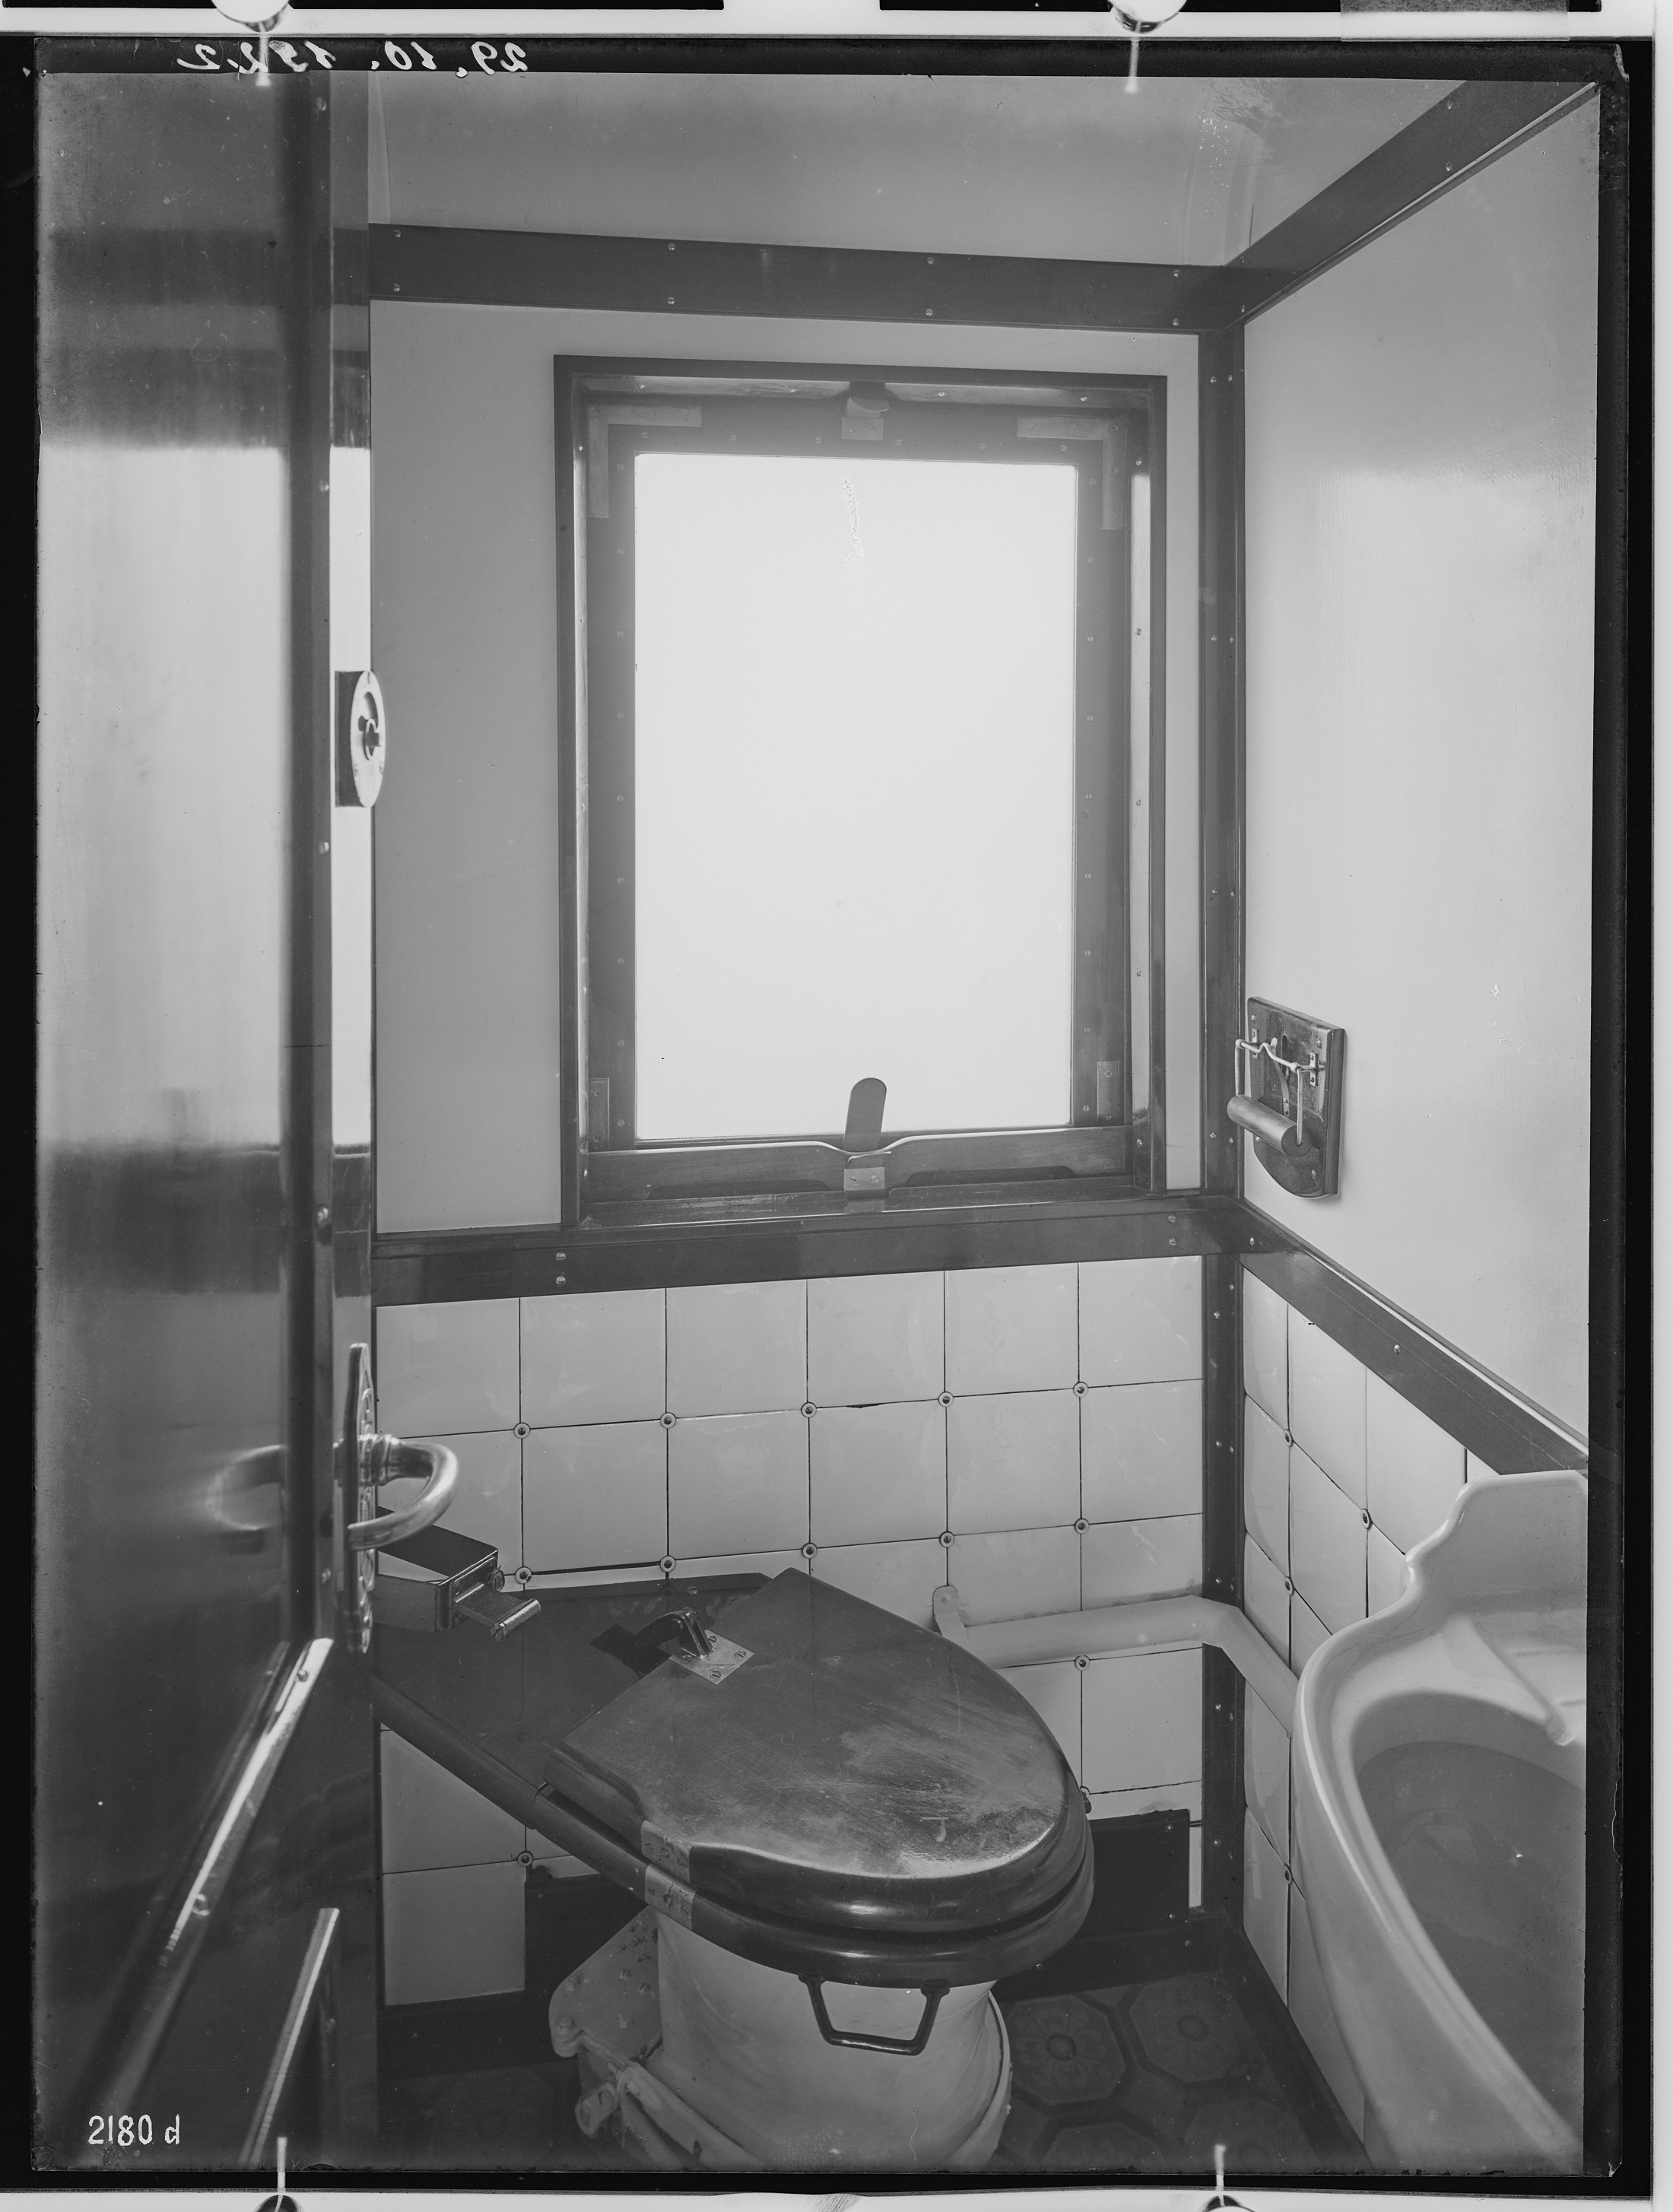 Fotografie: vierachsiger Durchgangswagen erste Klasse für Marokko (Toilette), 1922 (Schenkung der Bombardier Transportation, Werk Görlitz | Eigentum/Sammlung der Verkehrsmuseums Dresden gGmbH CC BY-NC-SA)